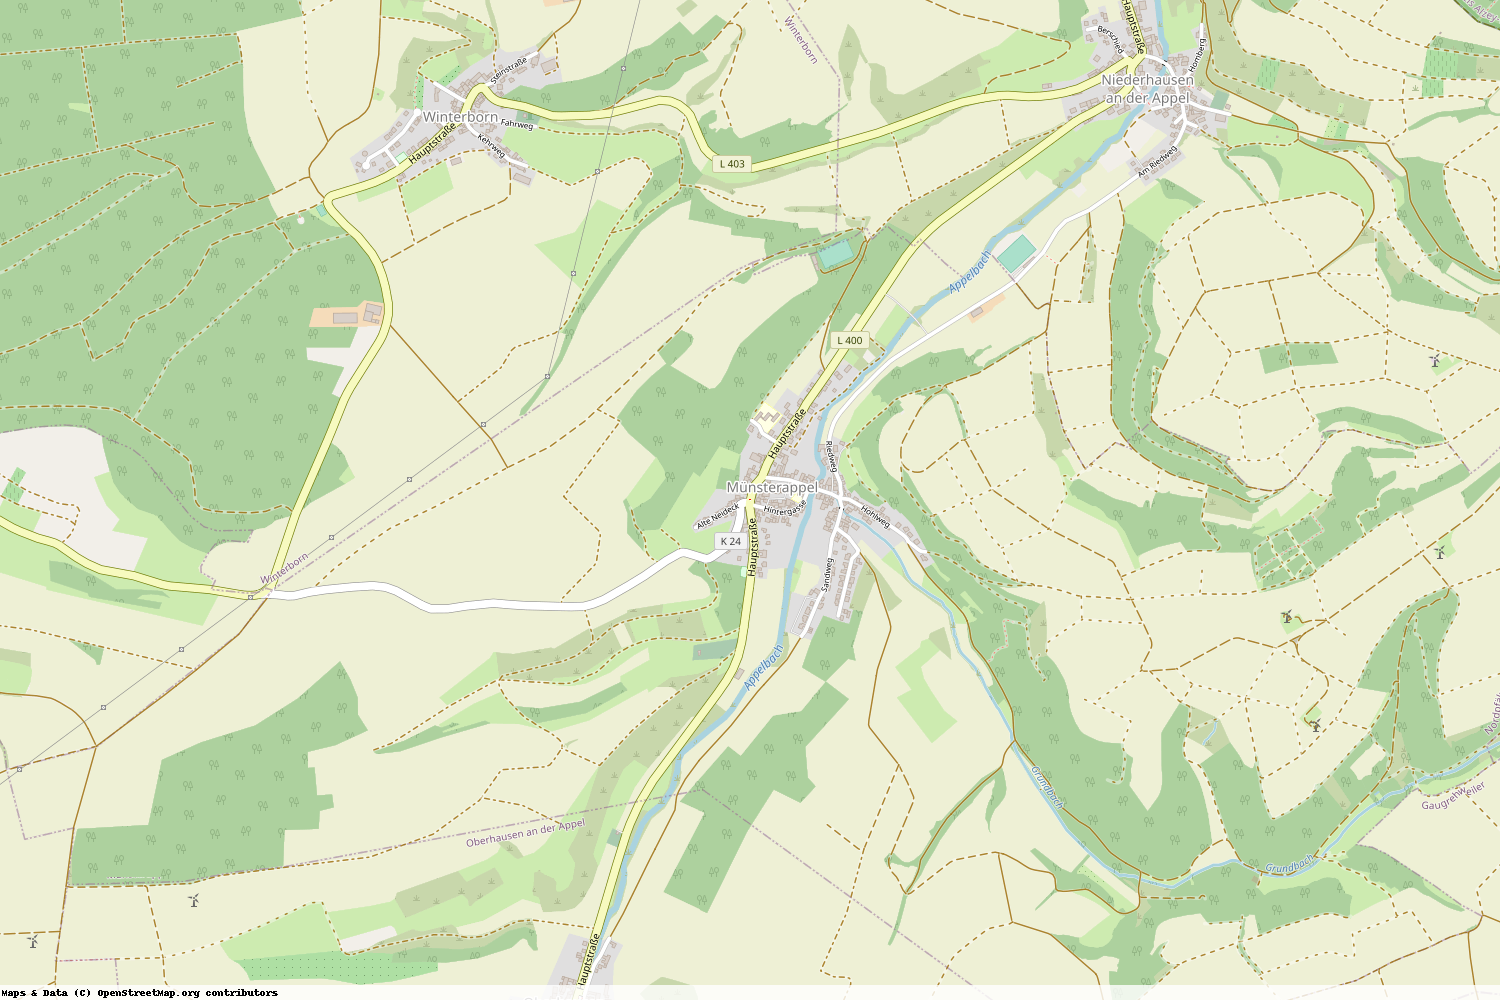 Ist gerade Stromausfall in Rheinland-Pfalz - Donnersbergkreis - Münsterappel?